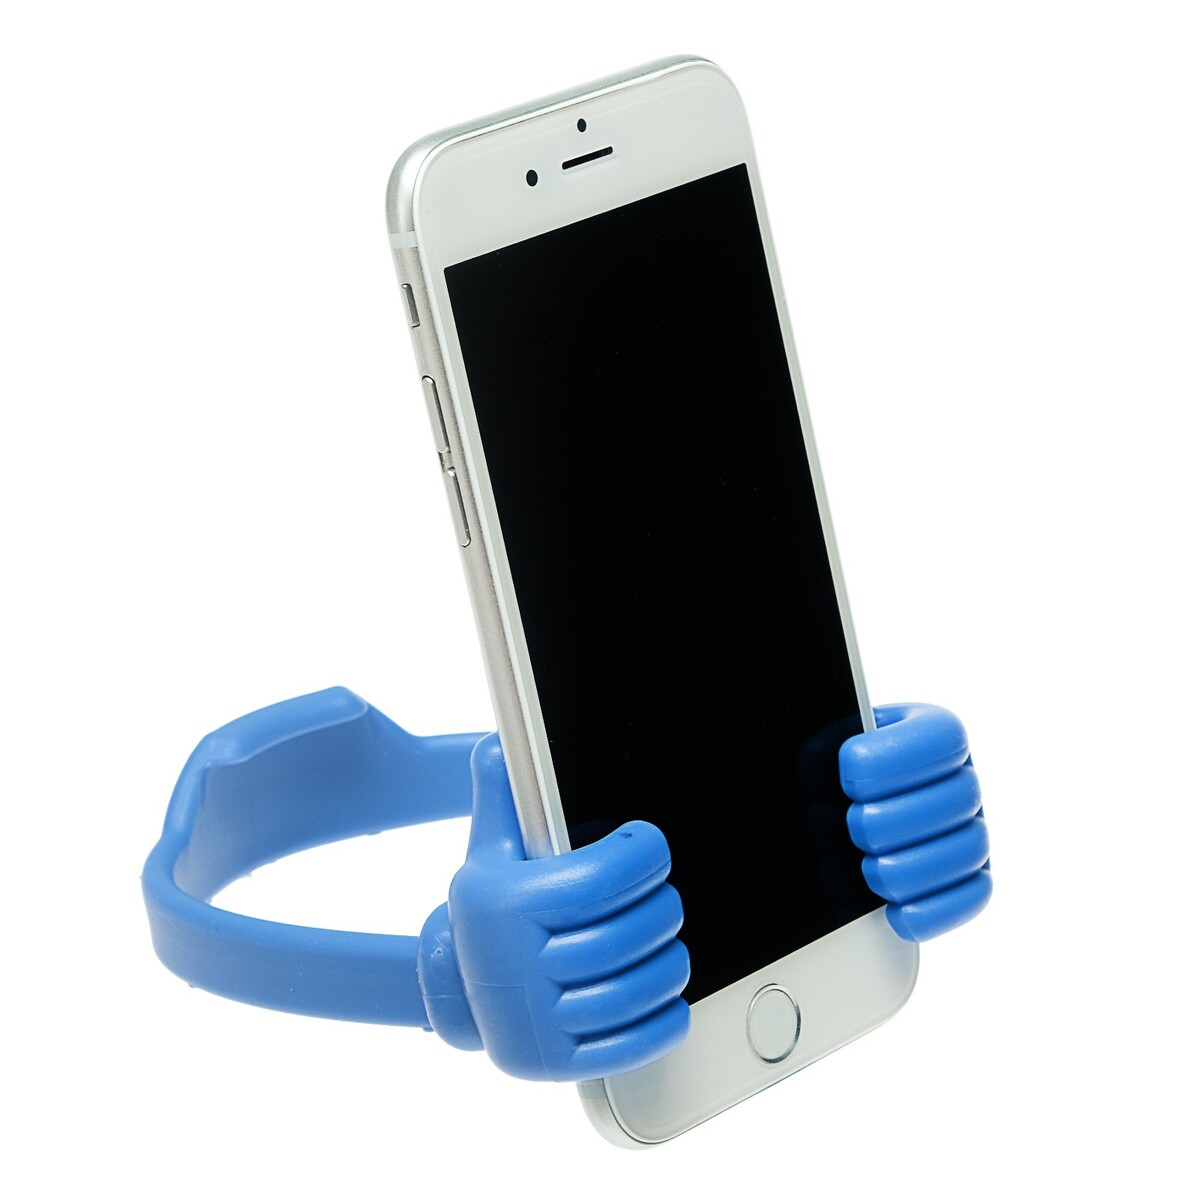 Подставка для телефона luazon, в форме рук, регулируемая ширина, синяя подставка для телефона luazon регулируемая высота силиконовые вставки синяя